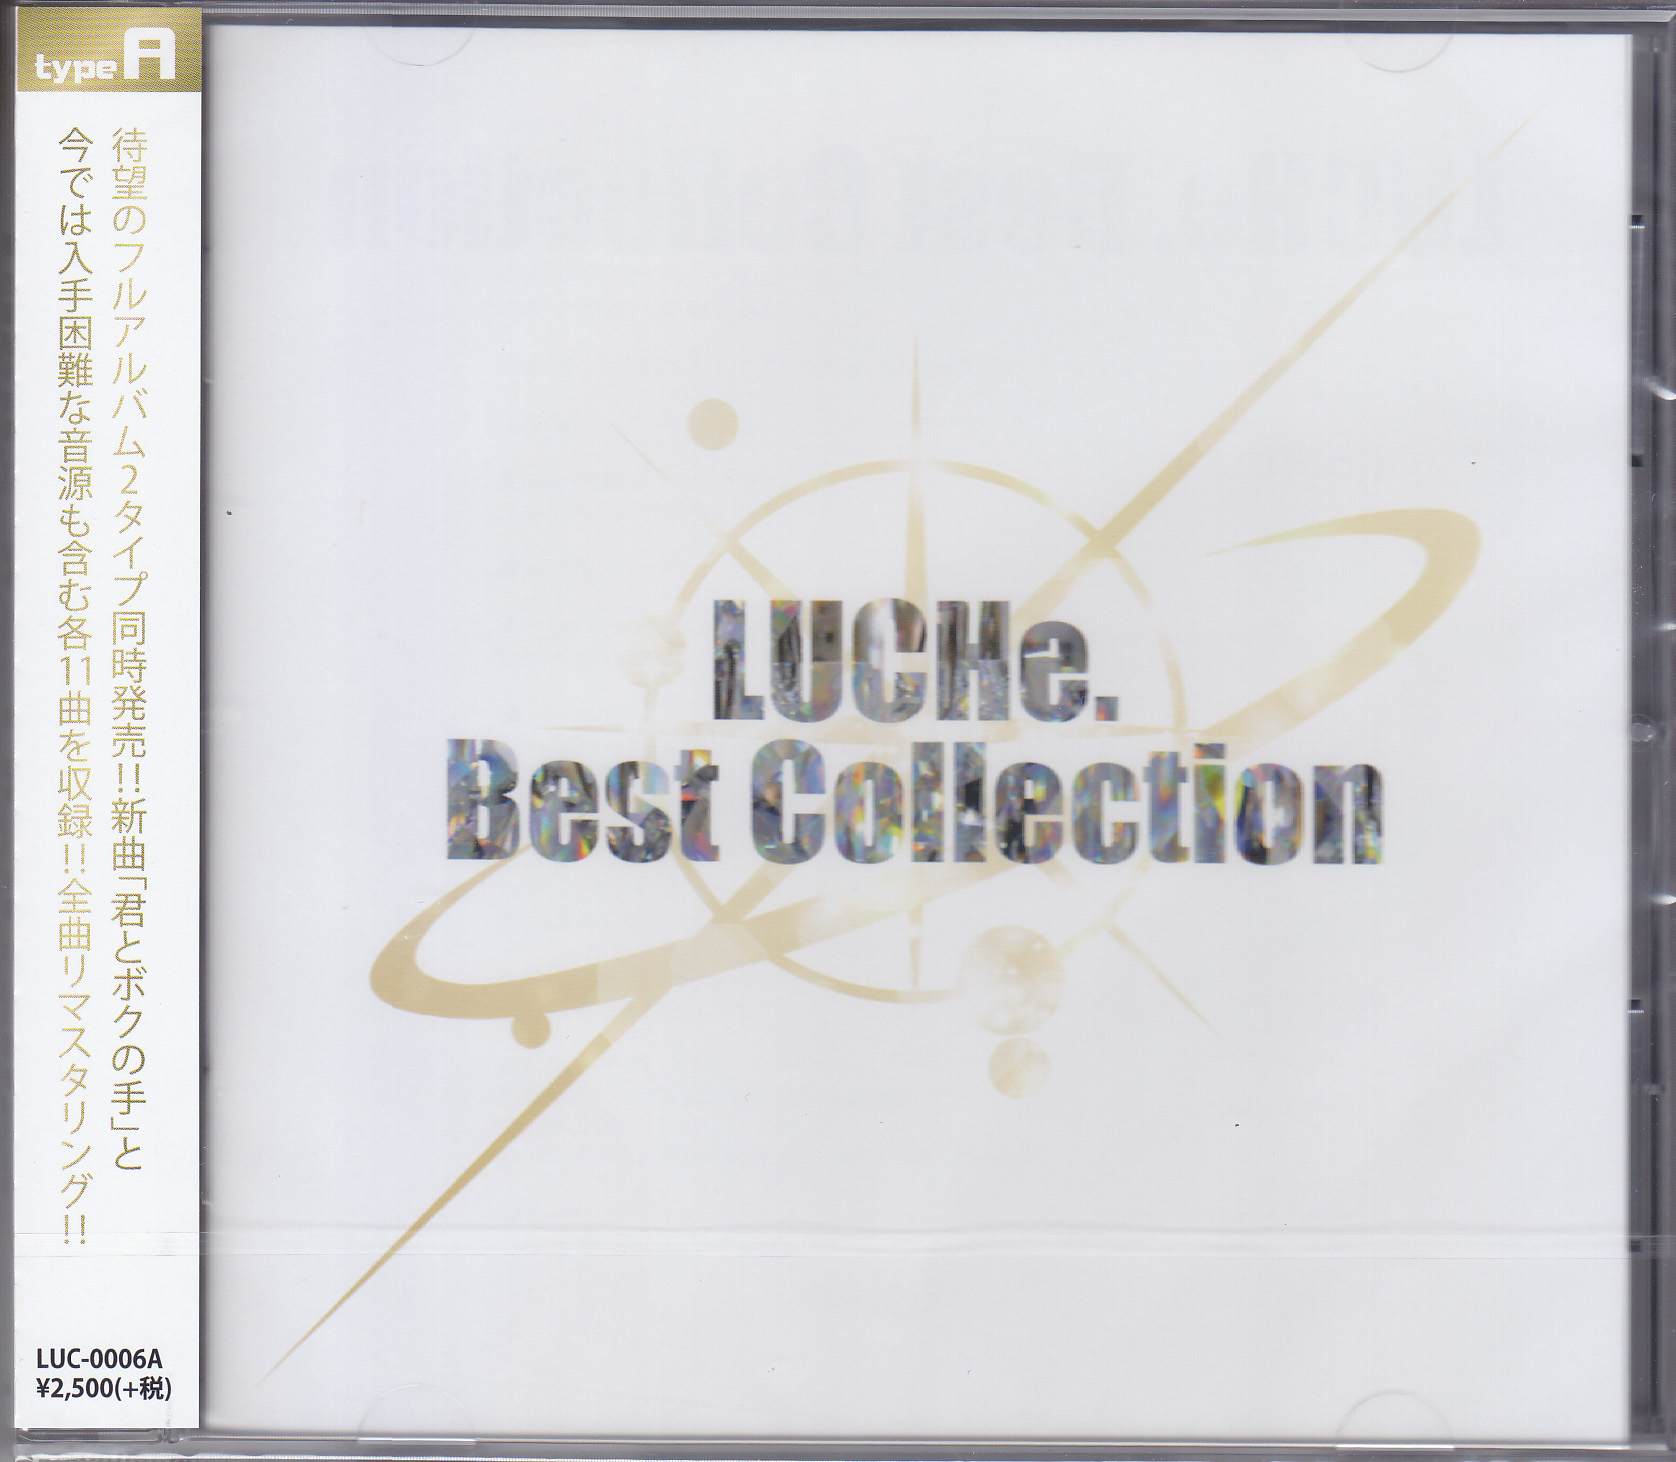 ルーチェ の CD LUCHe. Best Collection【Atype】